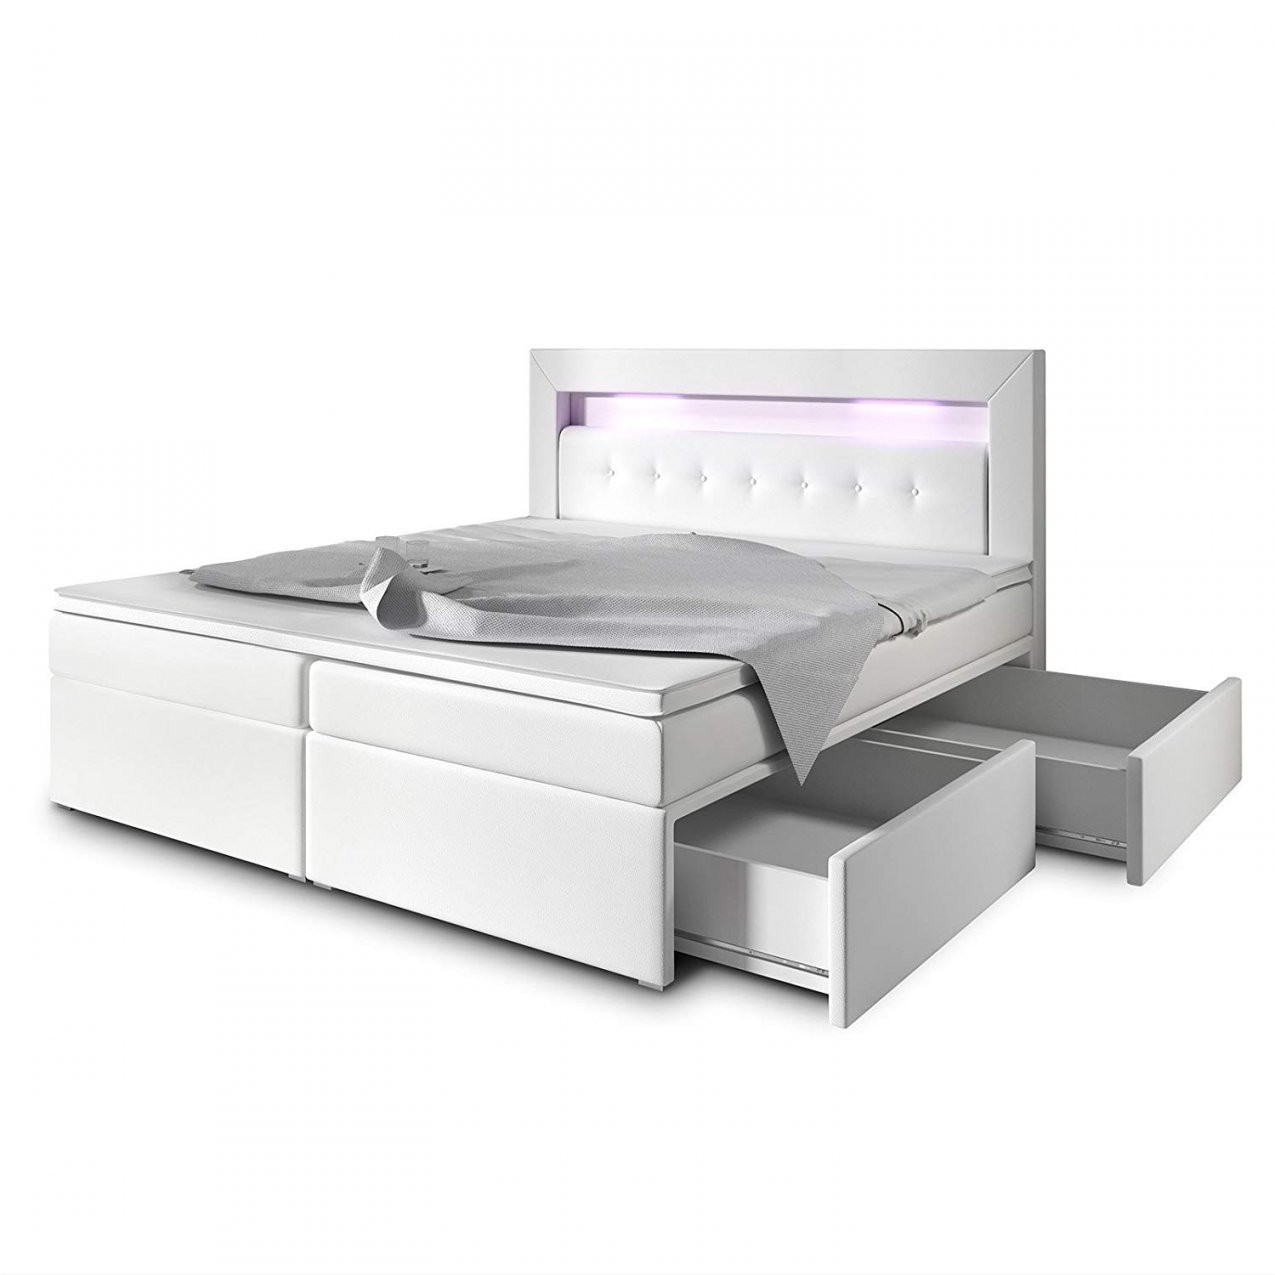 Doppelbett Mit Bettkasten ✓ Los Geht's (Doppelbett Bettkasten) von Bett Mit Bettkasten 180X200 Weiß Bild